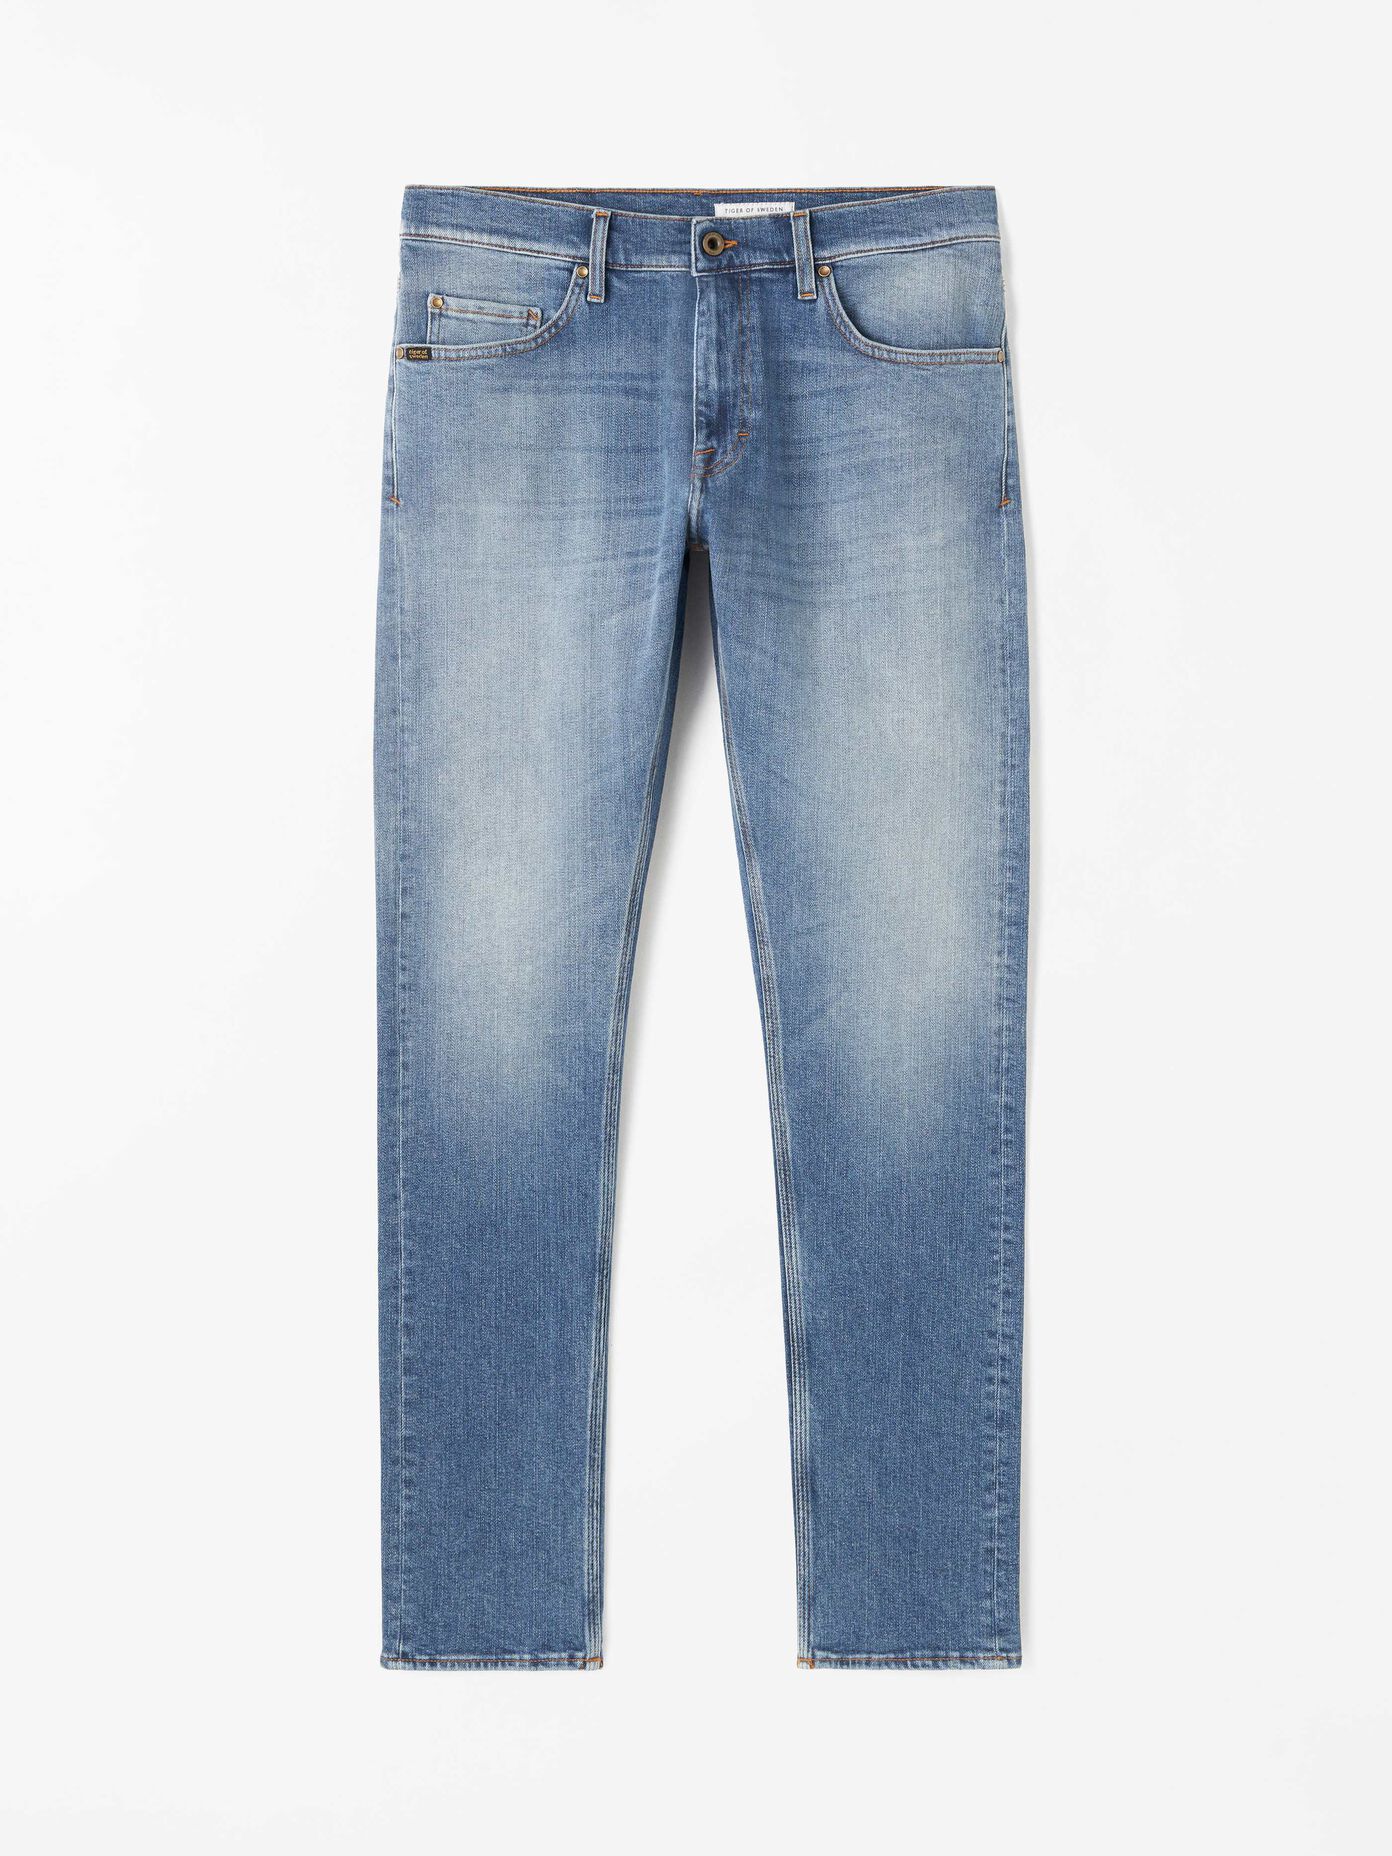 Men’s jeans. Slim fit & stretch jeans | Tiger of Sweden